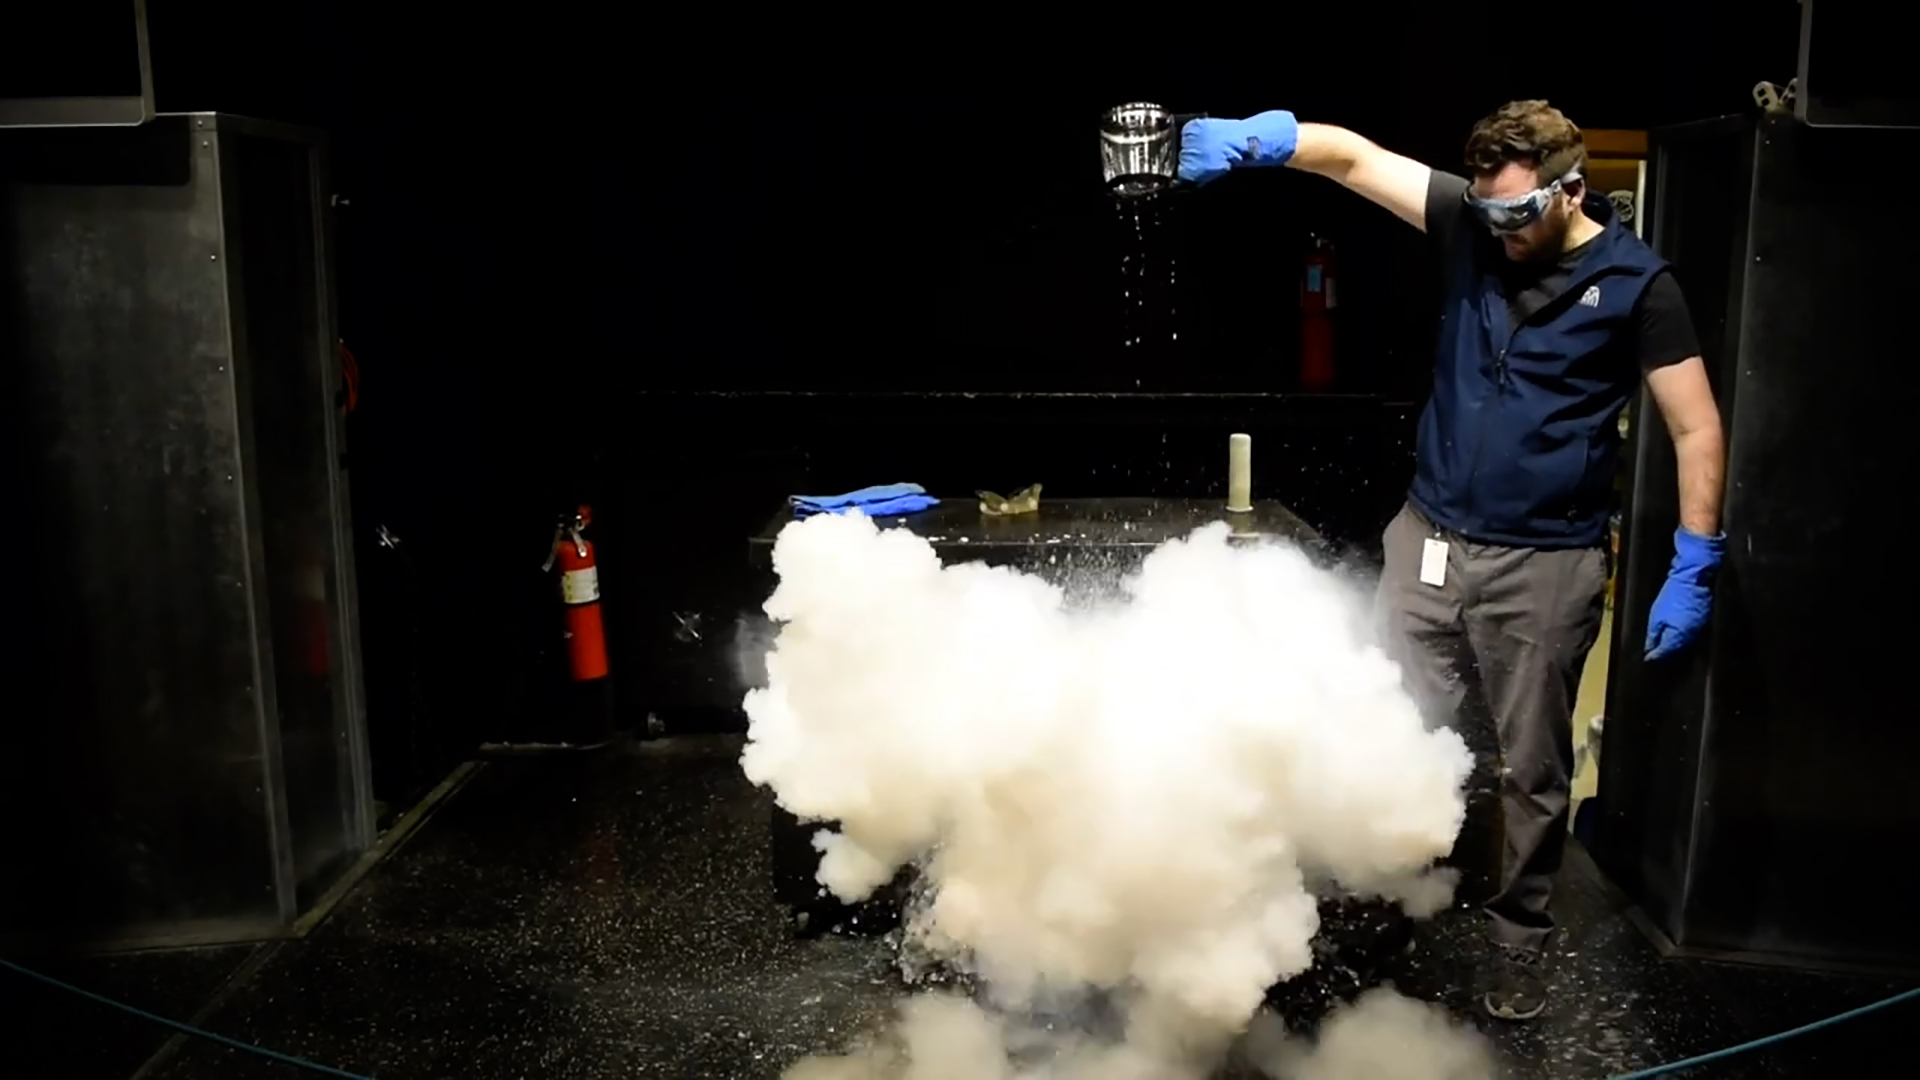 PacSci Educator experiments with liquid nitrogen.